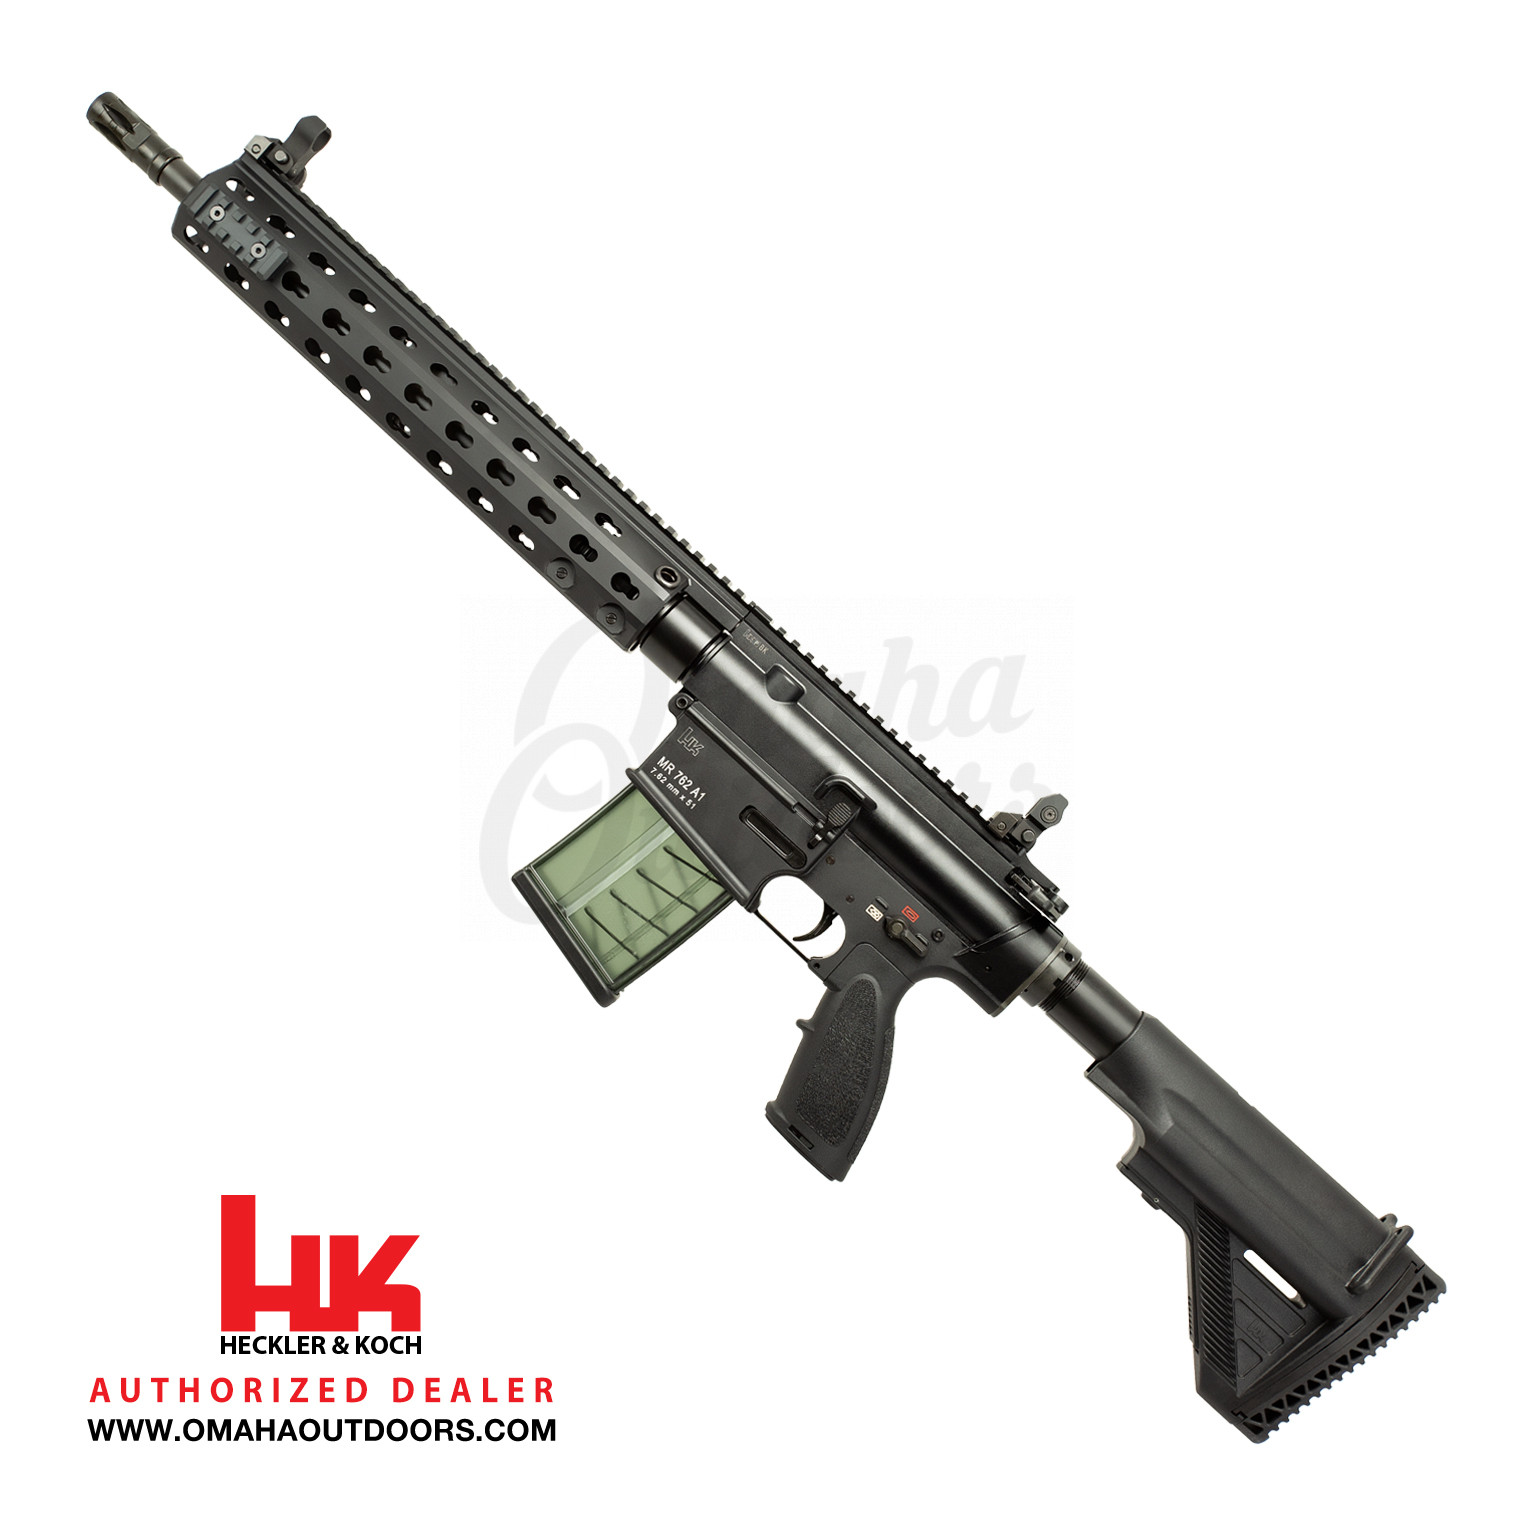 Hk Mr762a1 Rifle Rd 16 5 7 62 Keymod Ar 10 3 535